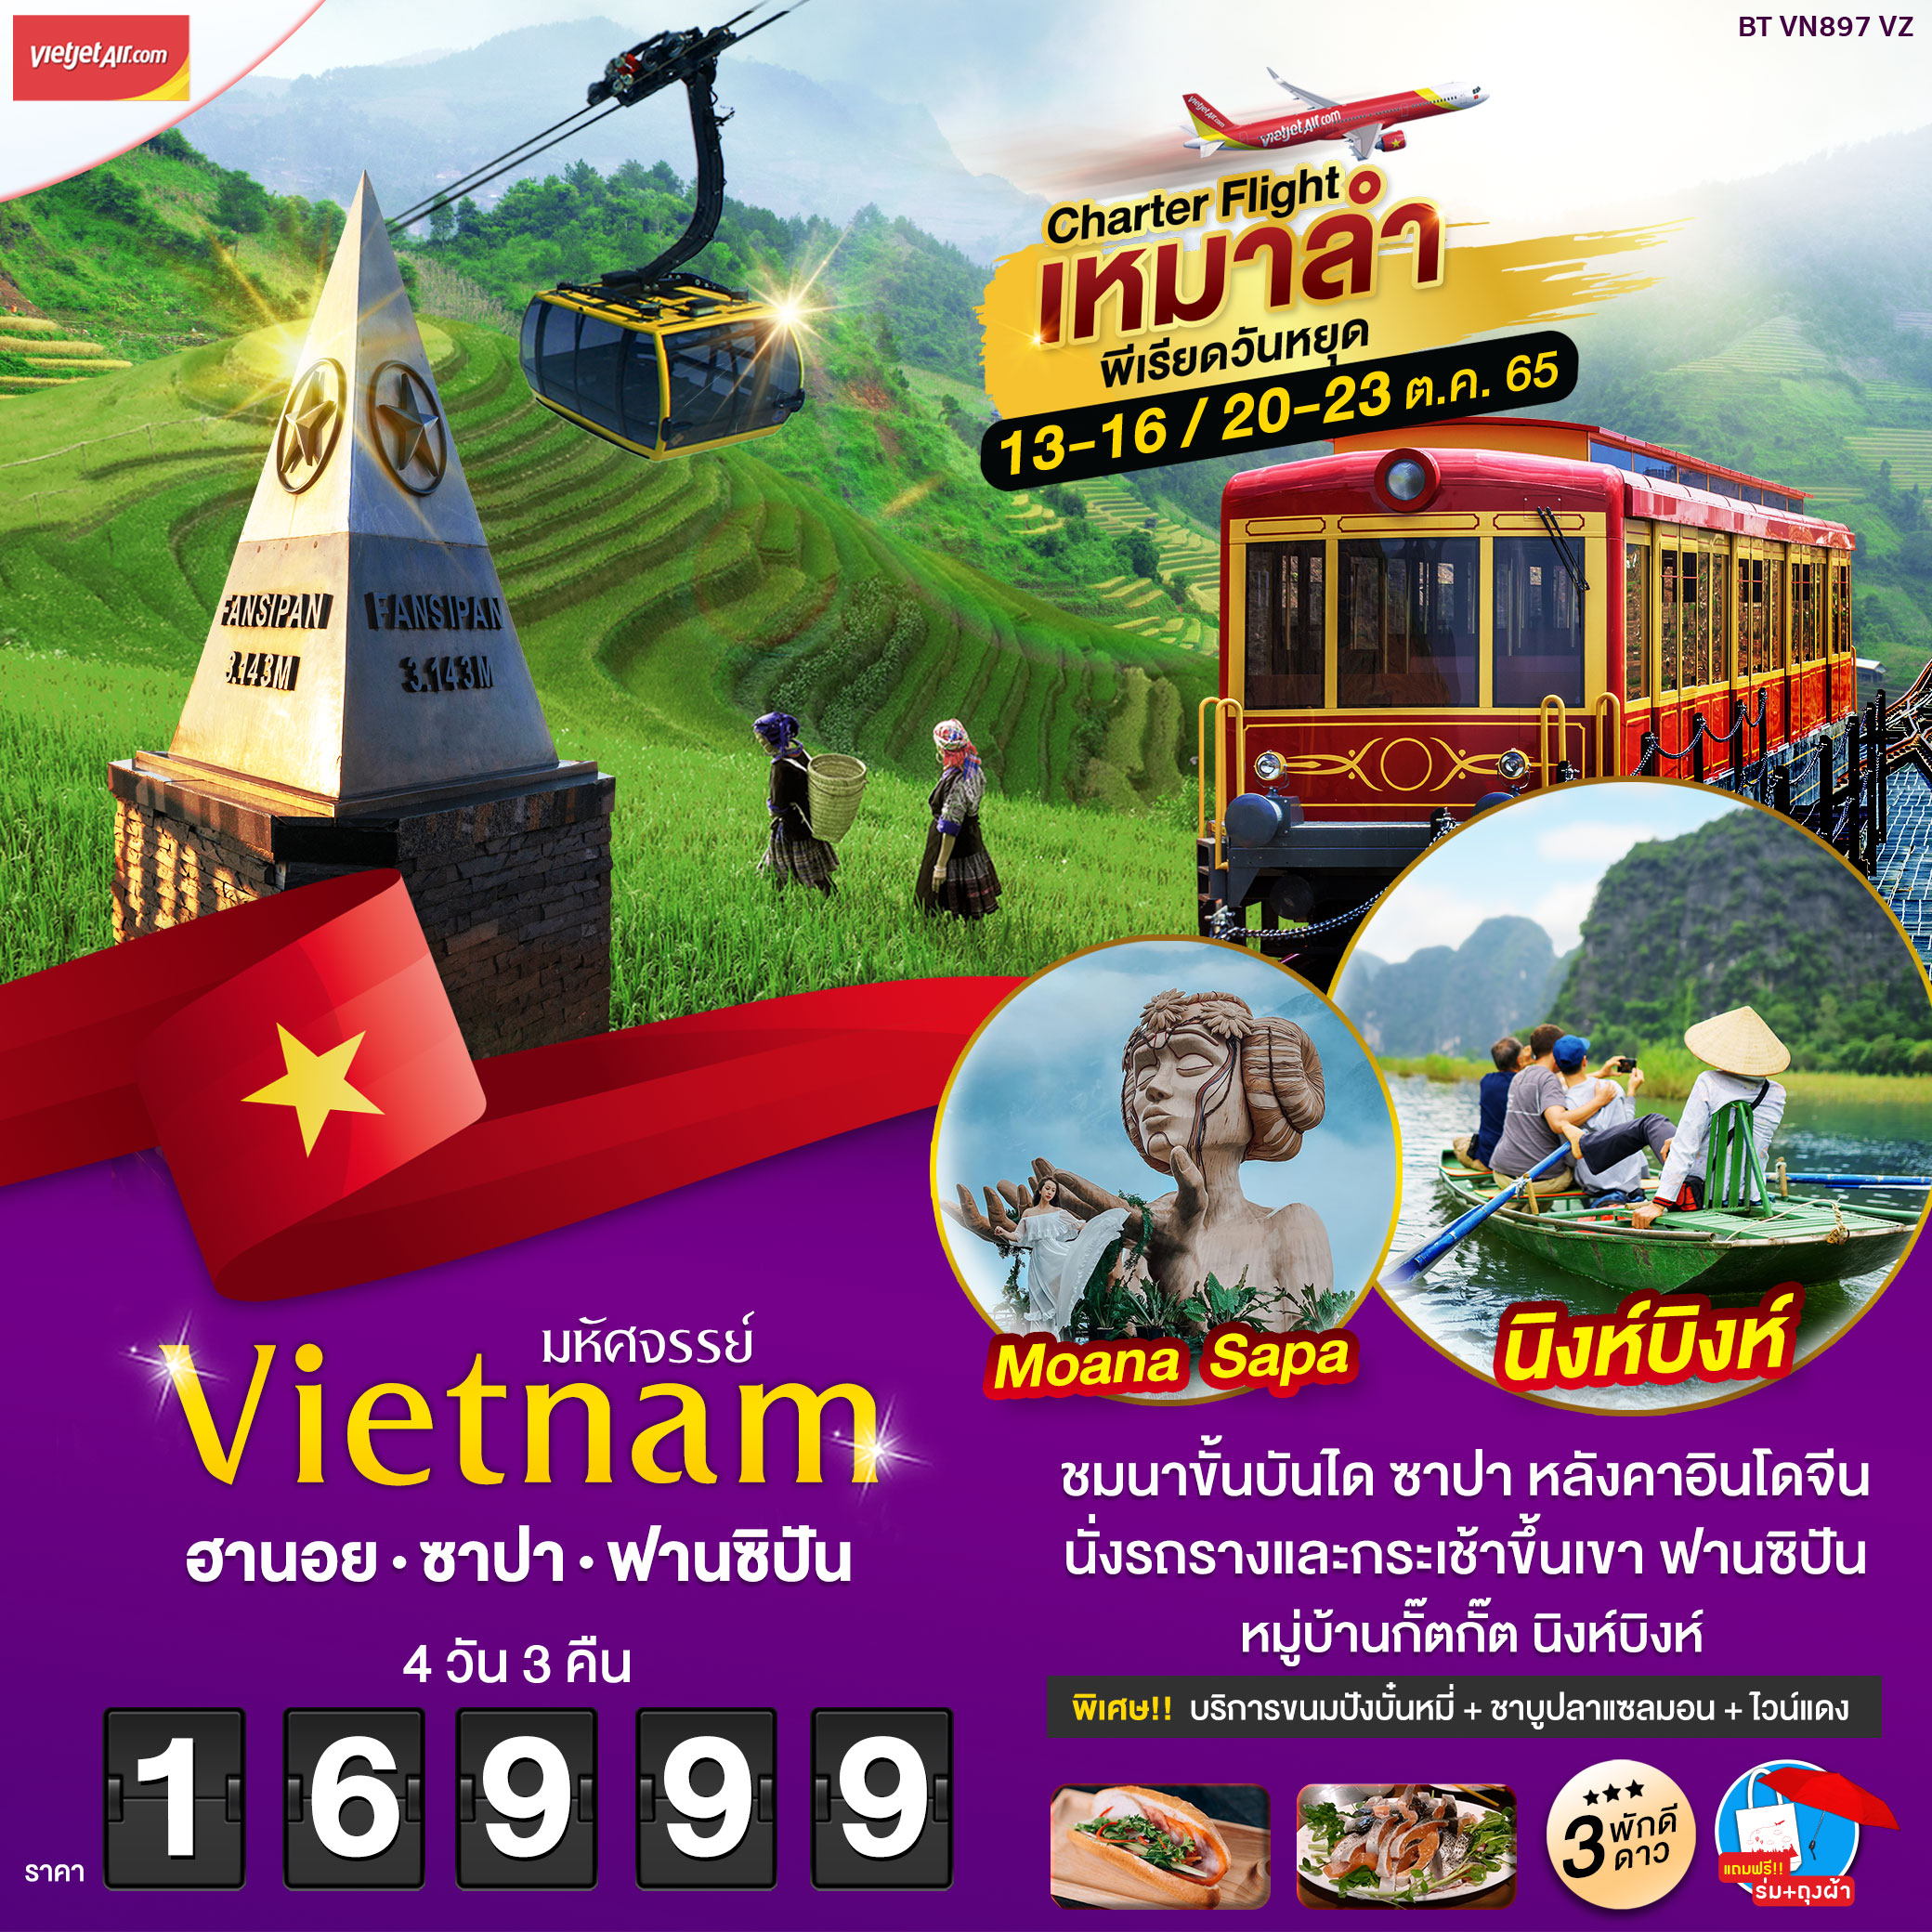 บินเหมาลำ ซาปา ฮานอย ฟานซีปัน นิงห์บิงห์ ตามก๊ก 2022 4 วัน 3 คืน โดยสายการบิน Thai Vietjet (OCT22)